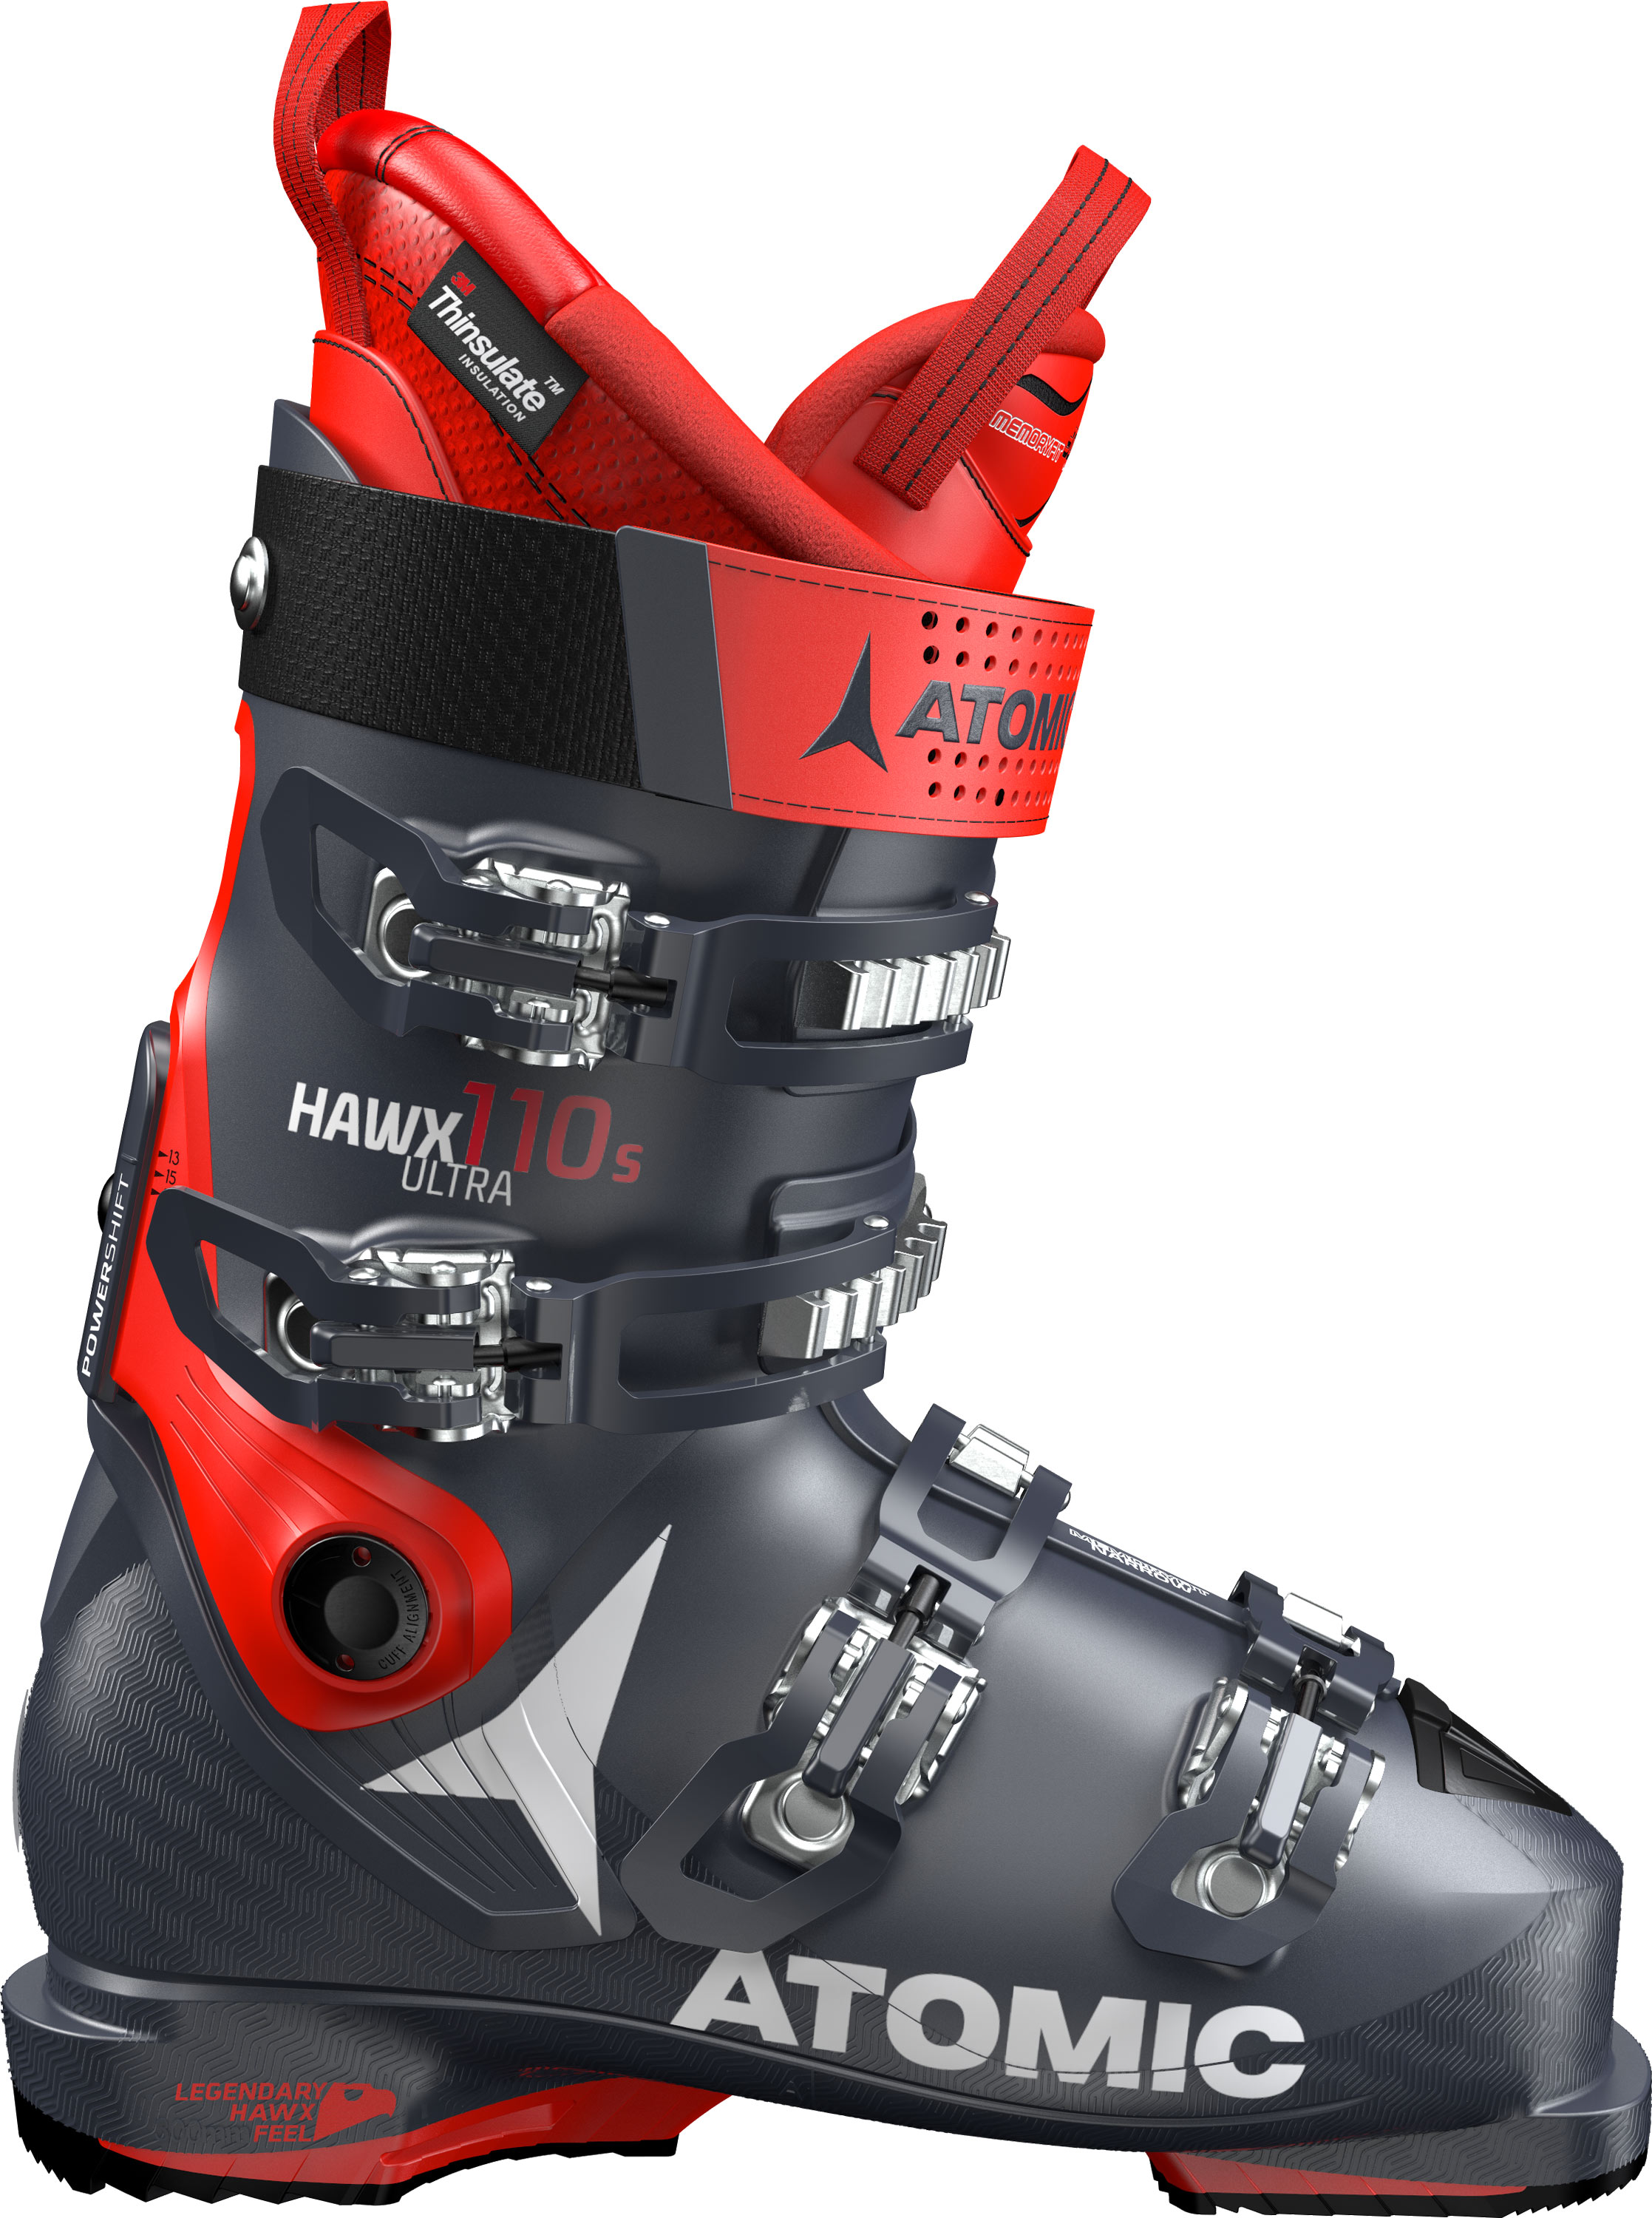 meer en meer mezelf Wardianzaak Atomic Hawx Ultra 110 S Ski Boot 2020 | Mount Everest